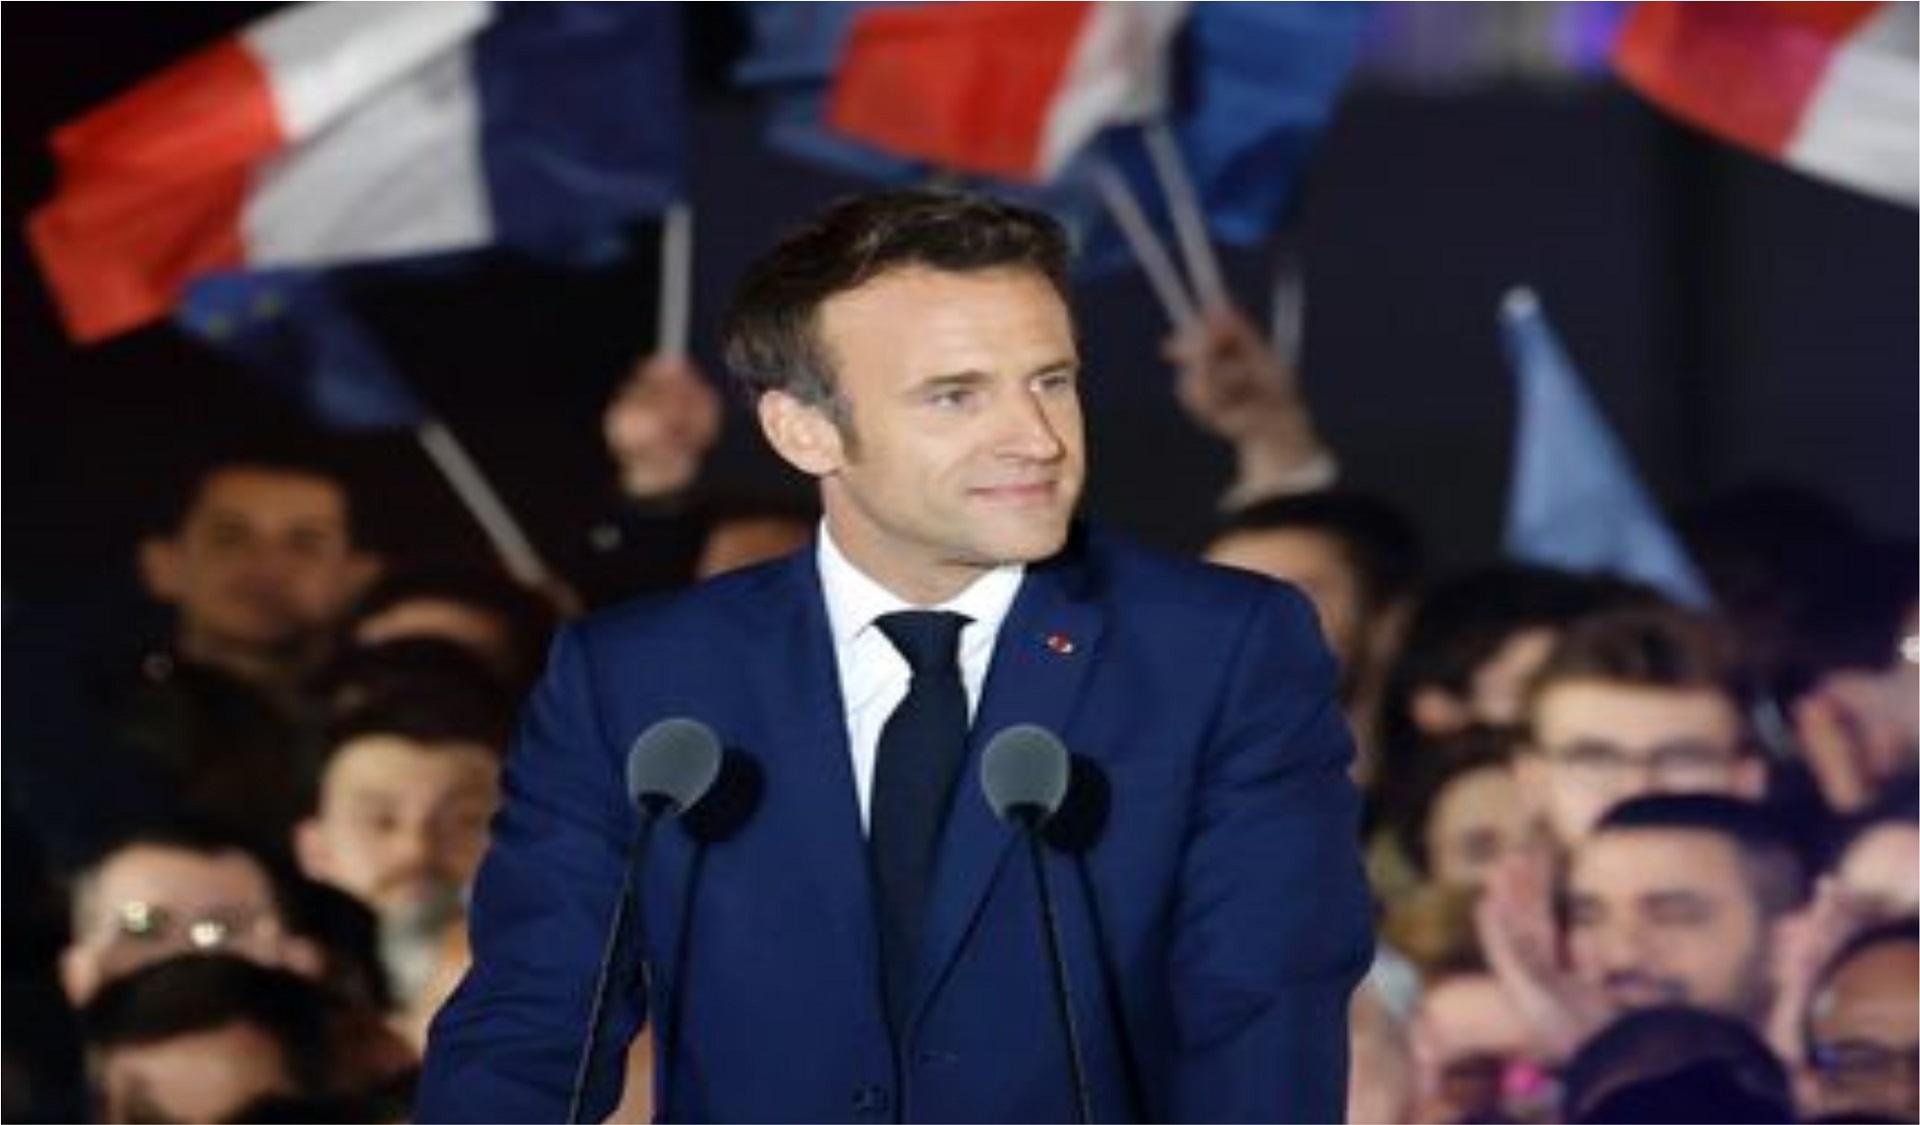 Aux armes, citoyens : décortiquer les élections françaises « mises en scène »